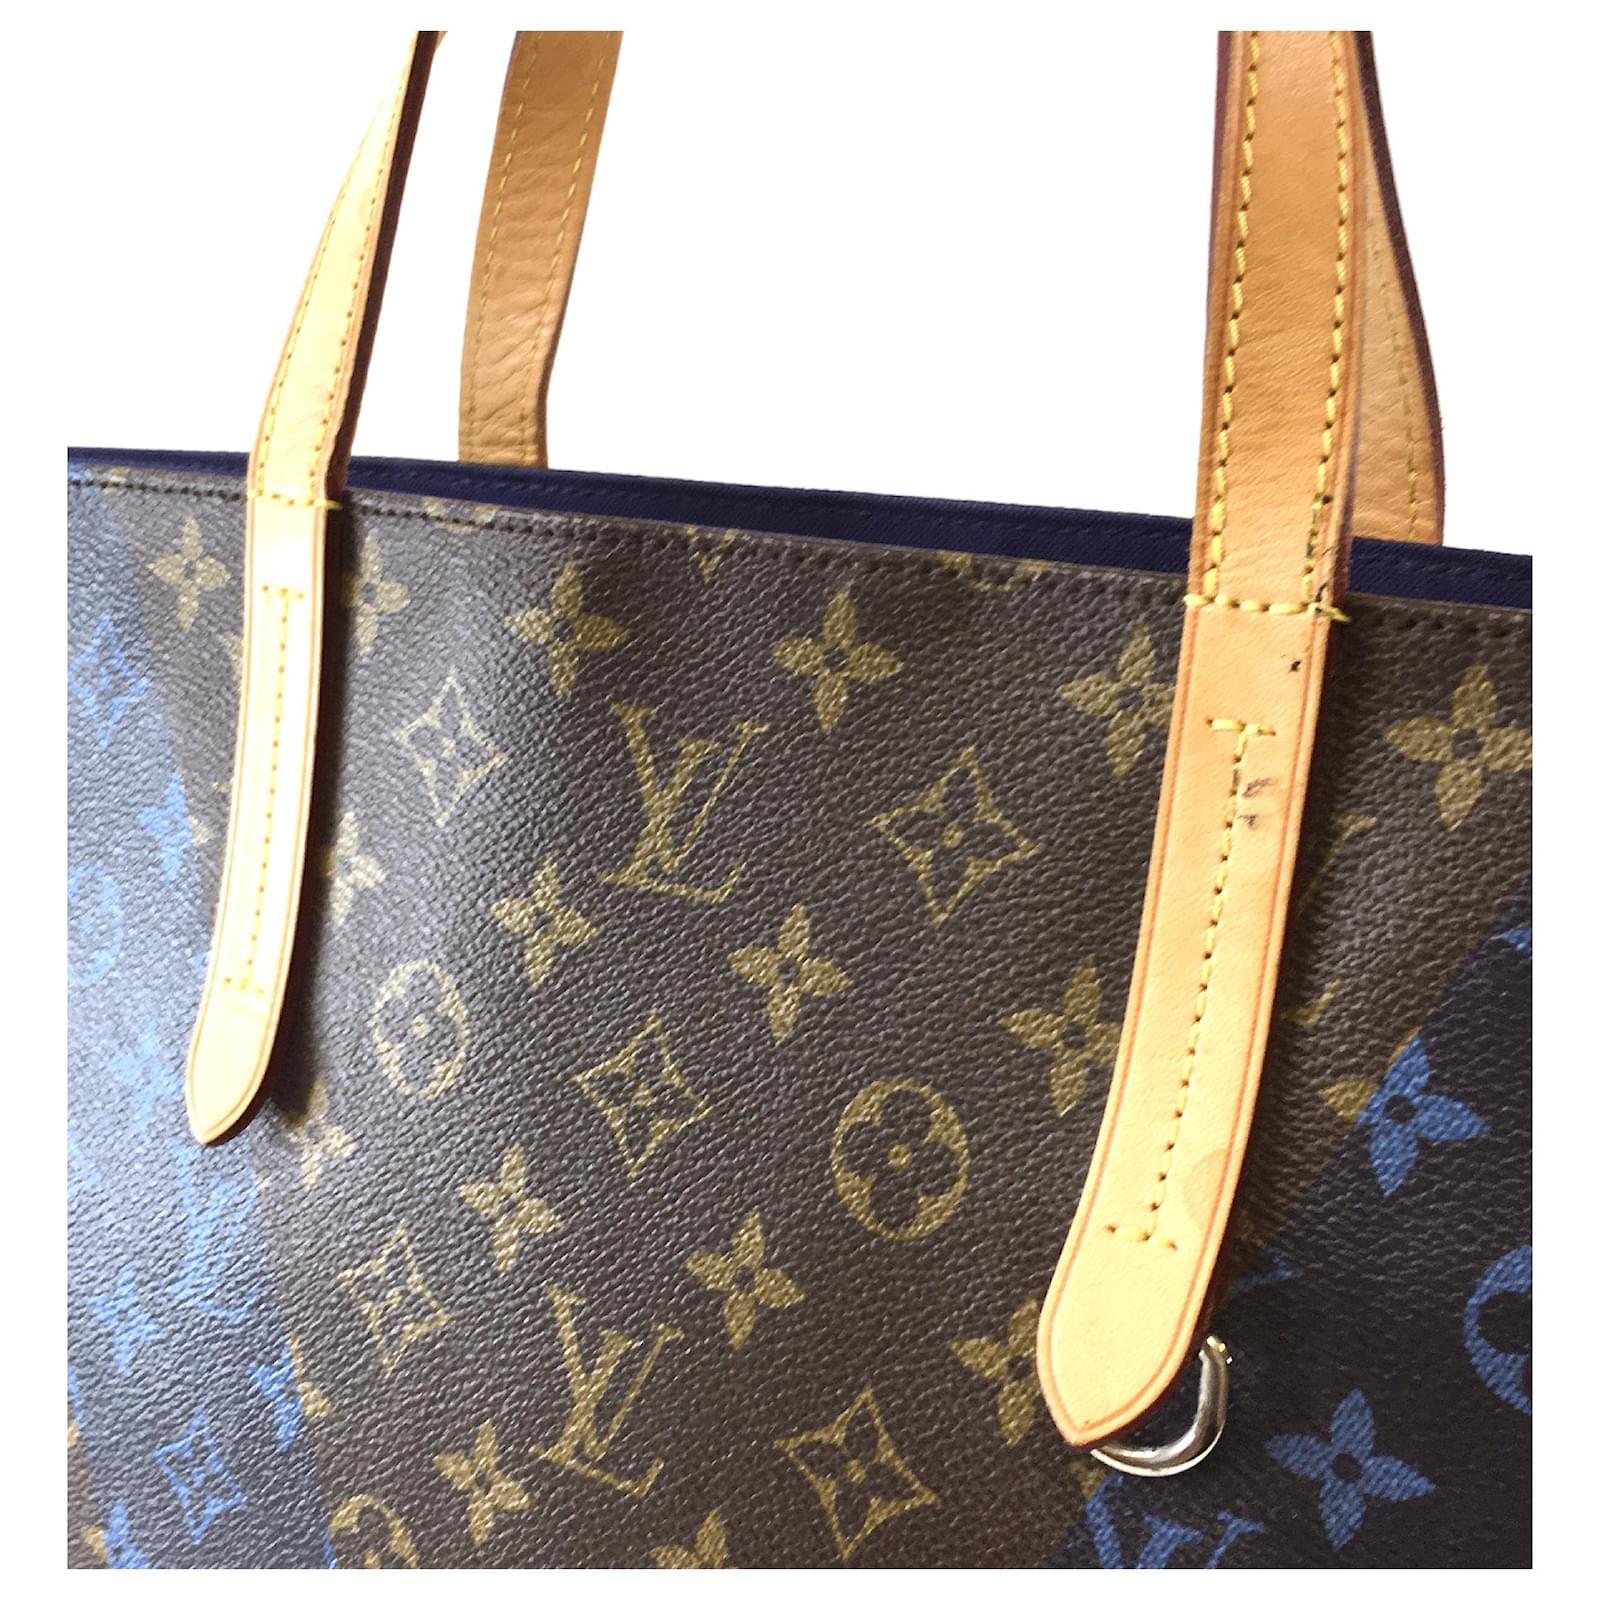 Louis Vuitton, Bags, Louis Vuitton Cabas Mezzo Shoulder Bag